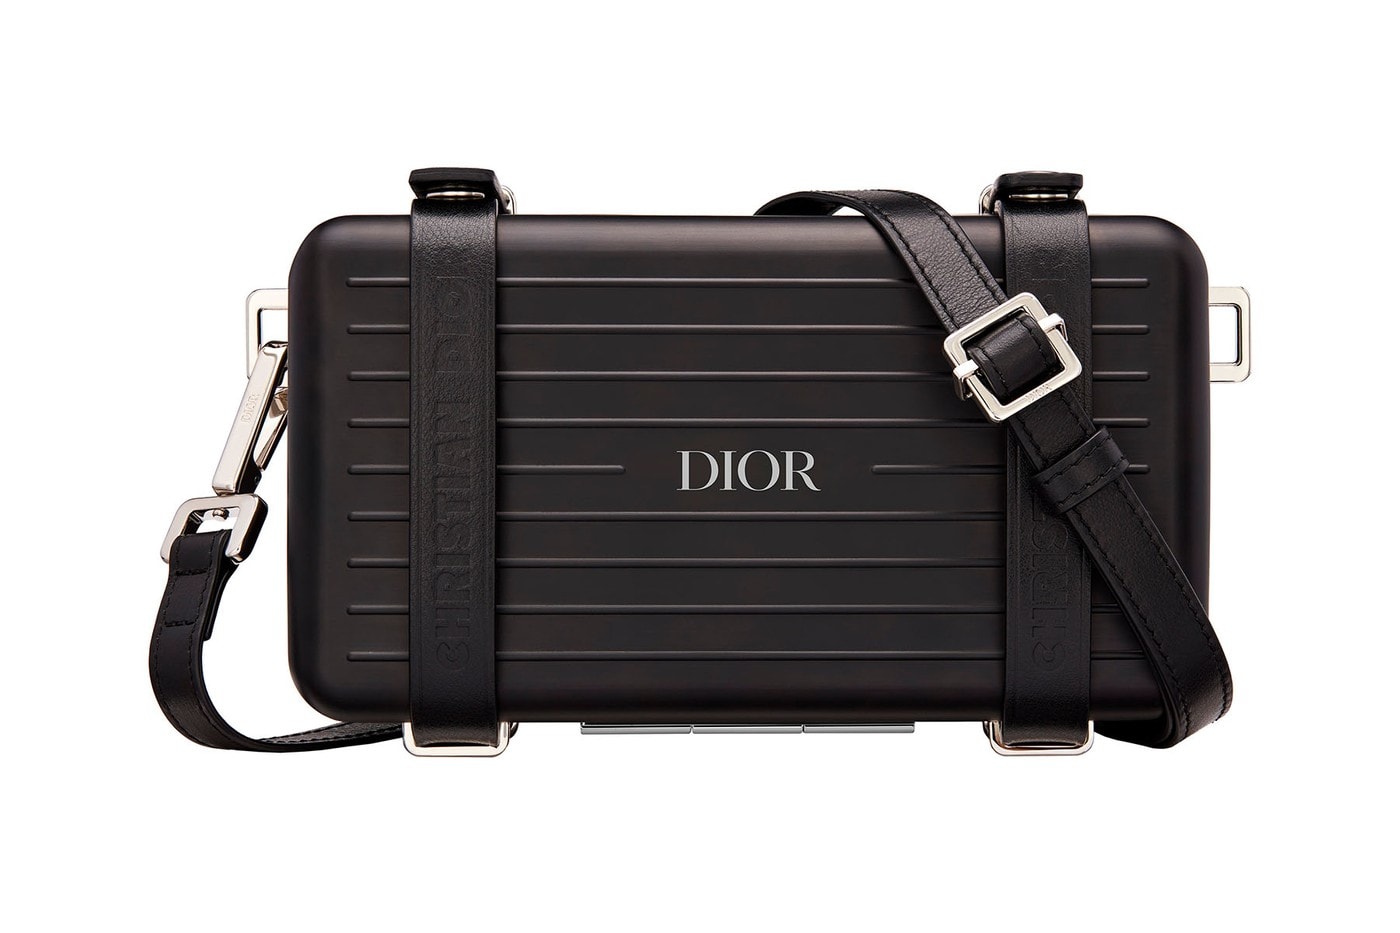 Dior x Rimowa 奢華之聯名系列發售情報公開